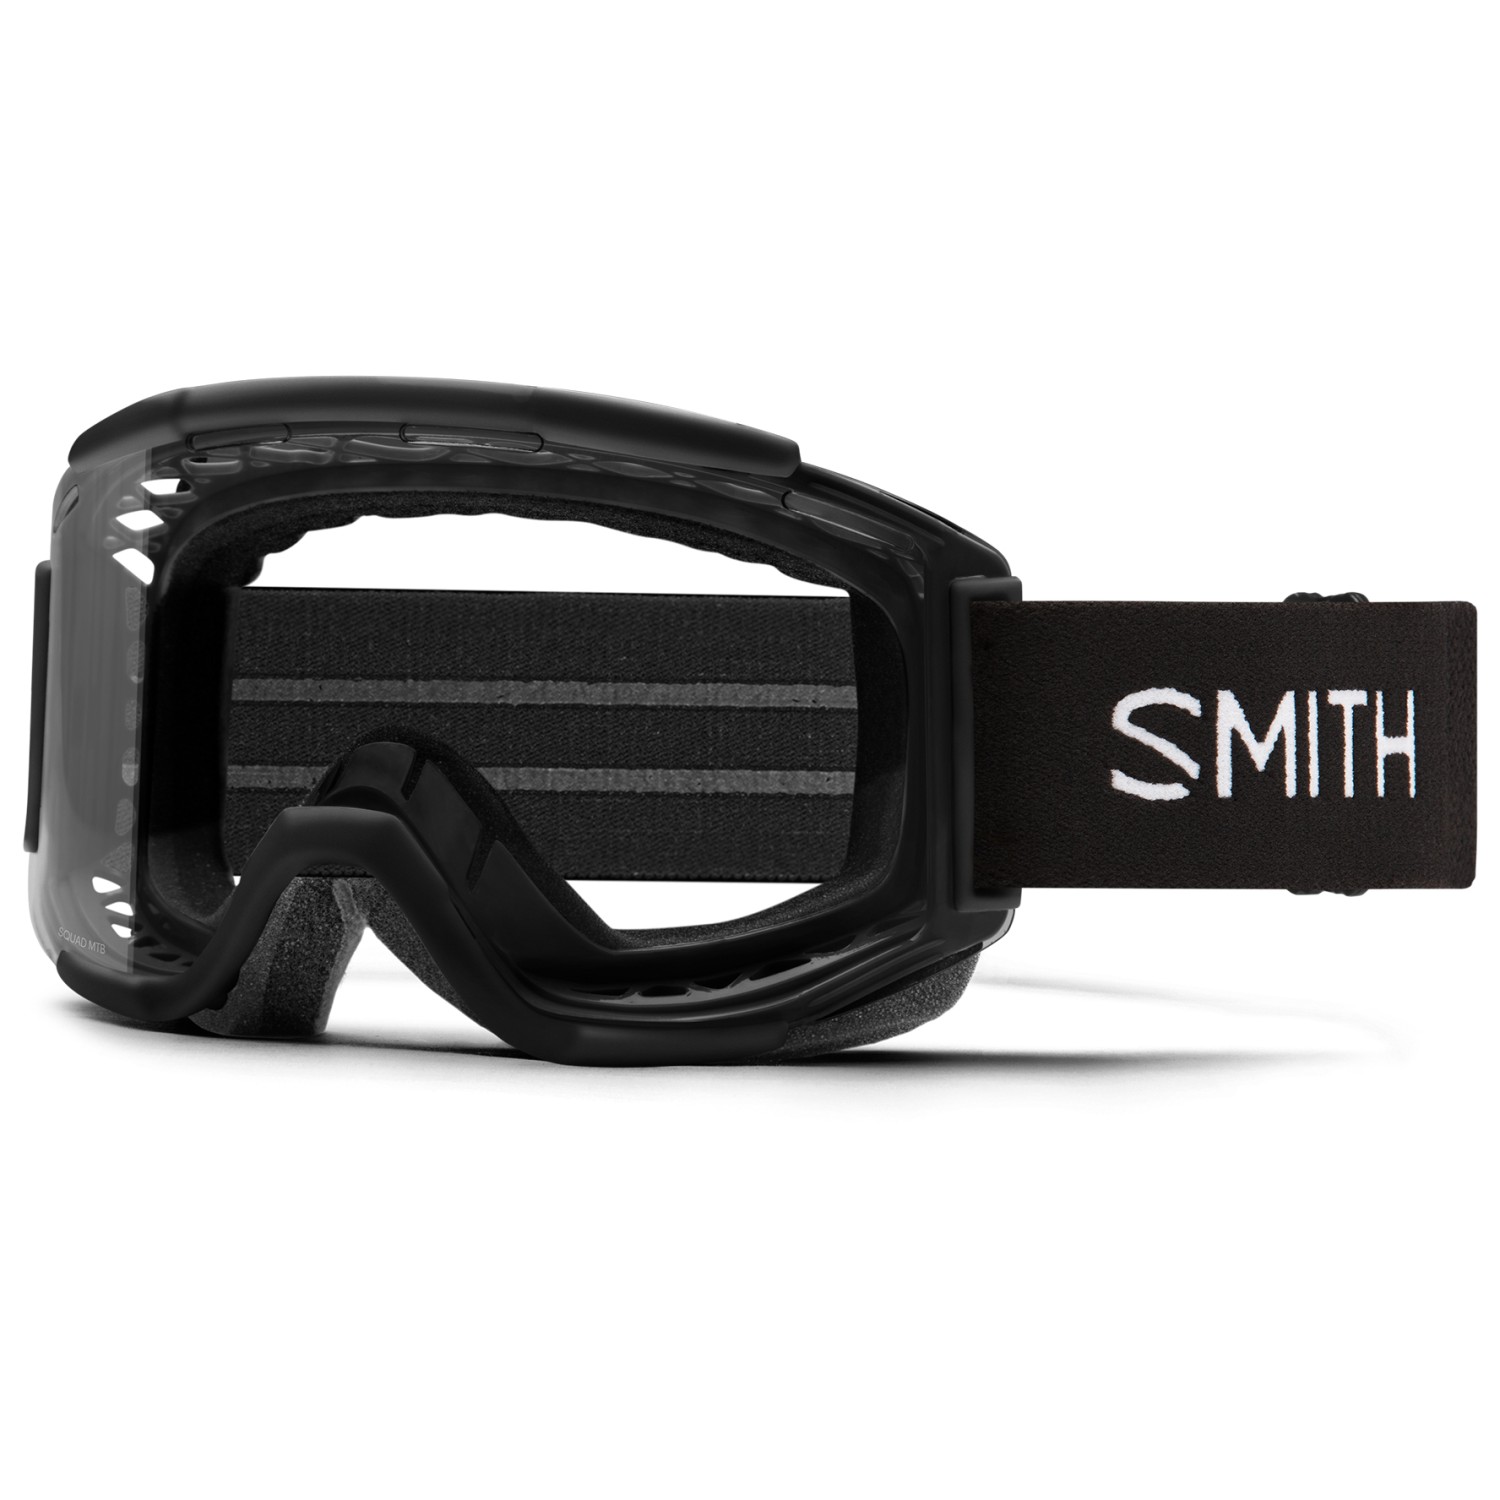 Велосипедные очки Smith Squad MTB S0 (90 % VLT), цвет Black II